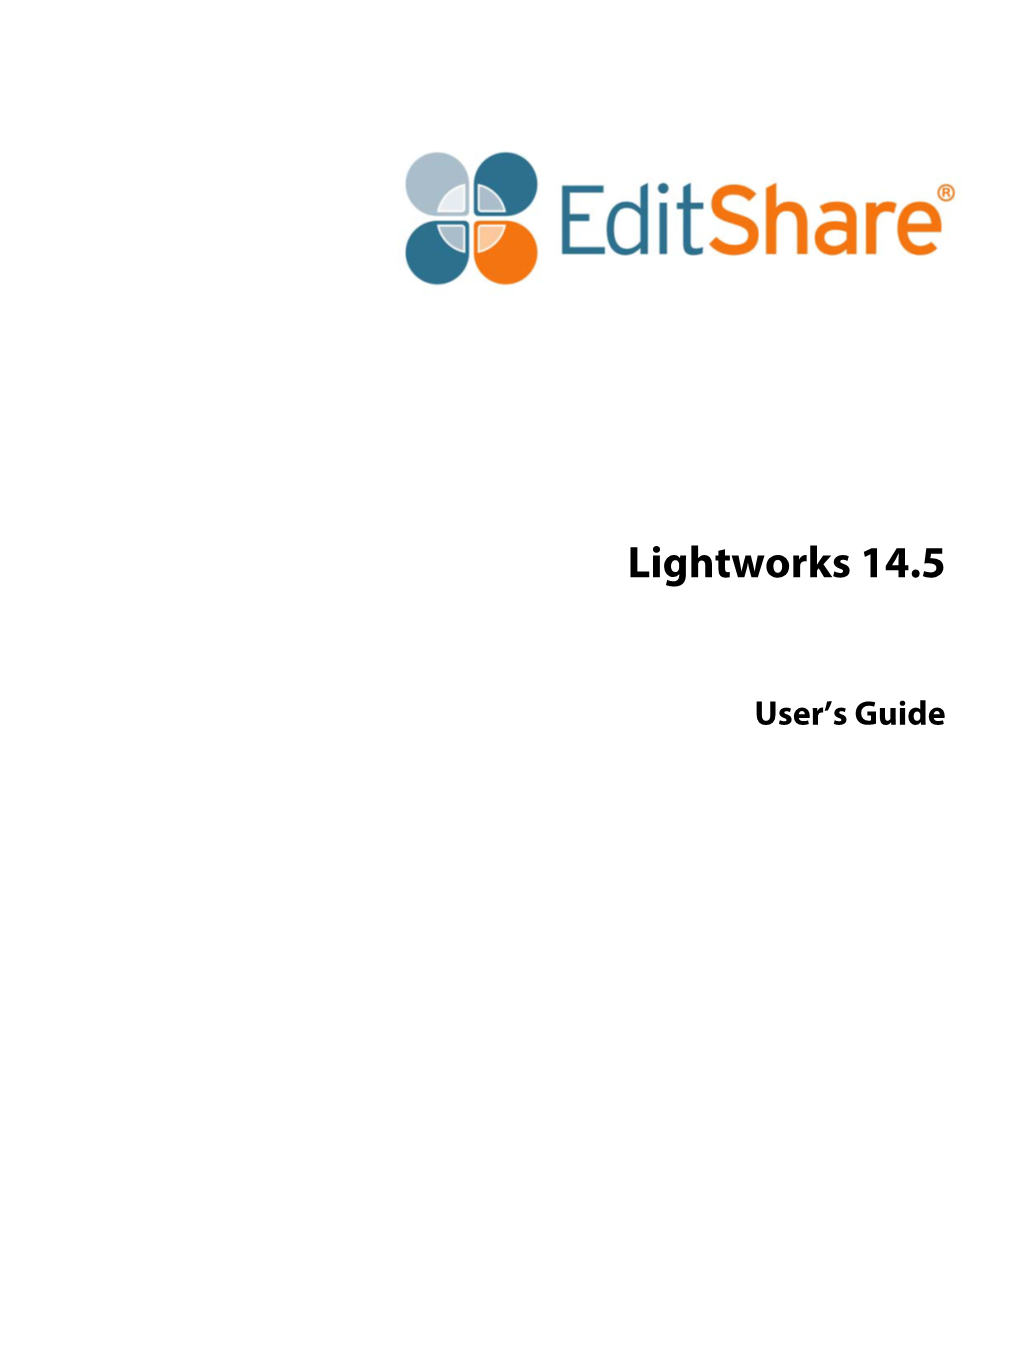 Lightworks V14.5 User Guide